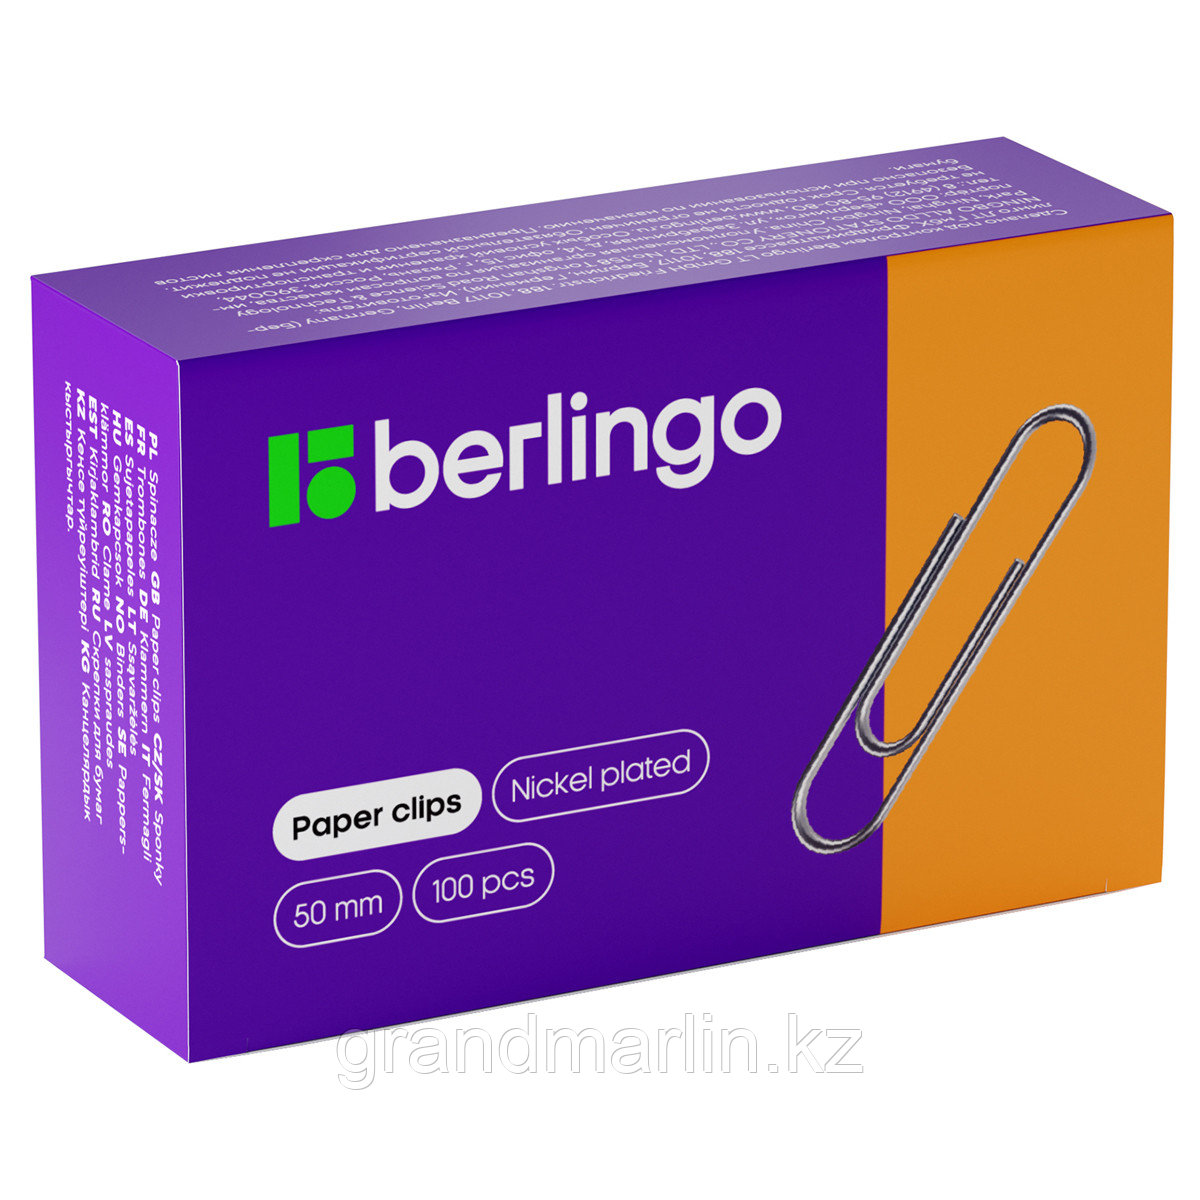 Скрепки Berlingo 50мм 100шт/уп, никелированные, карт. упак.